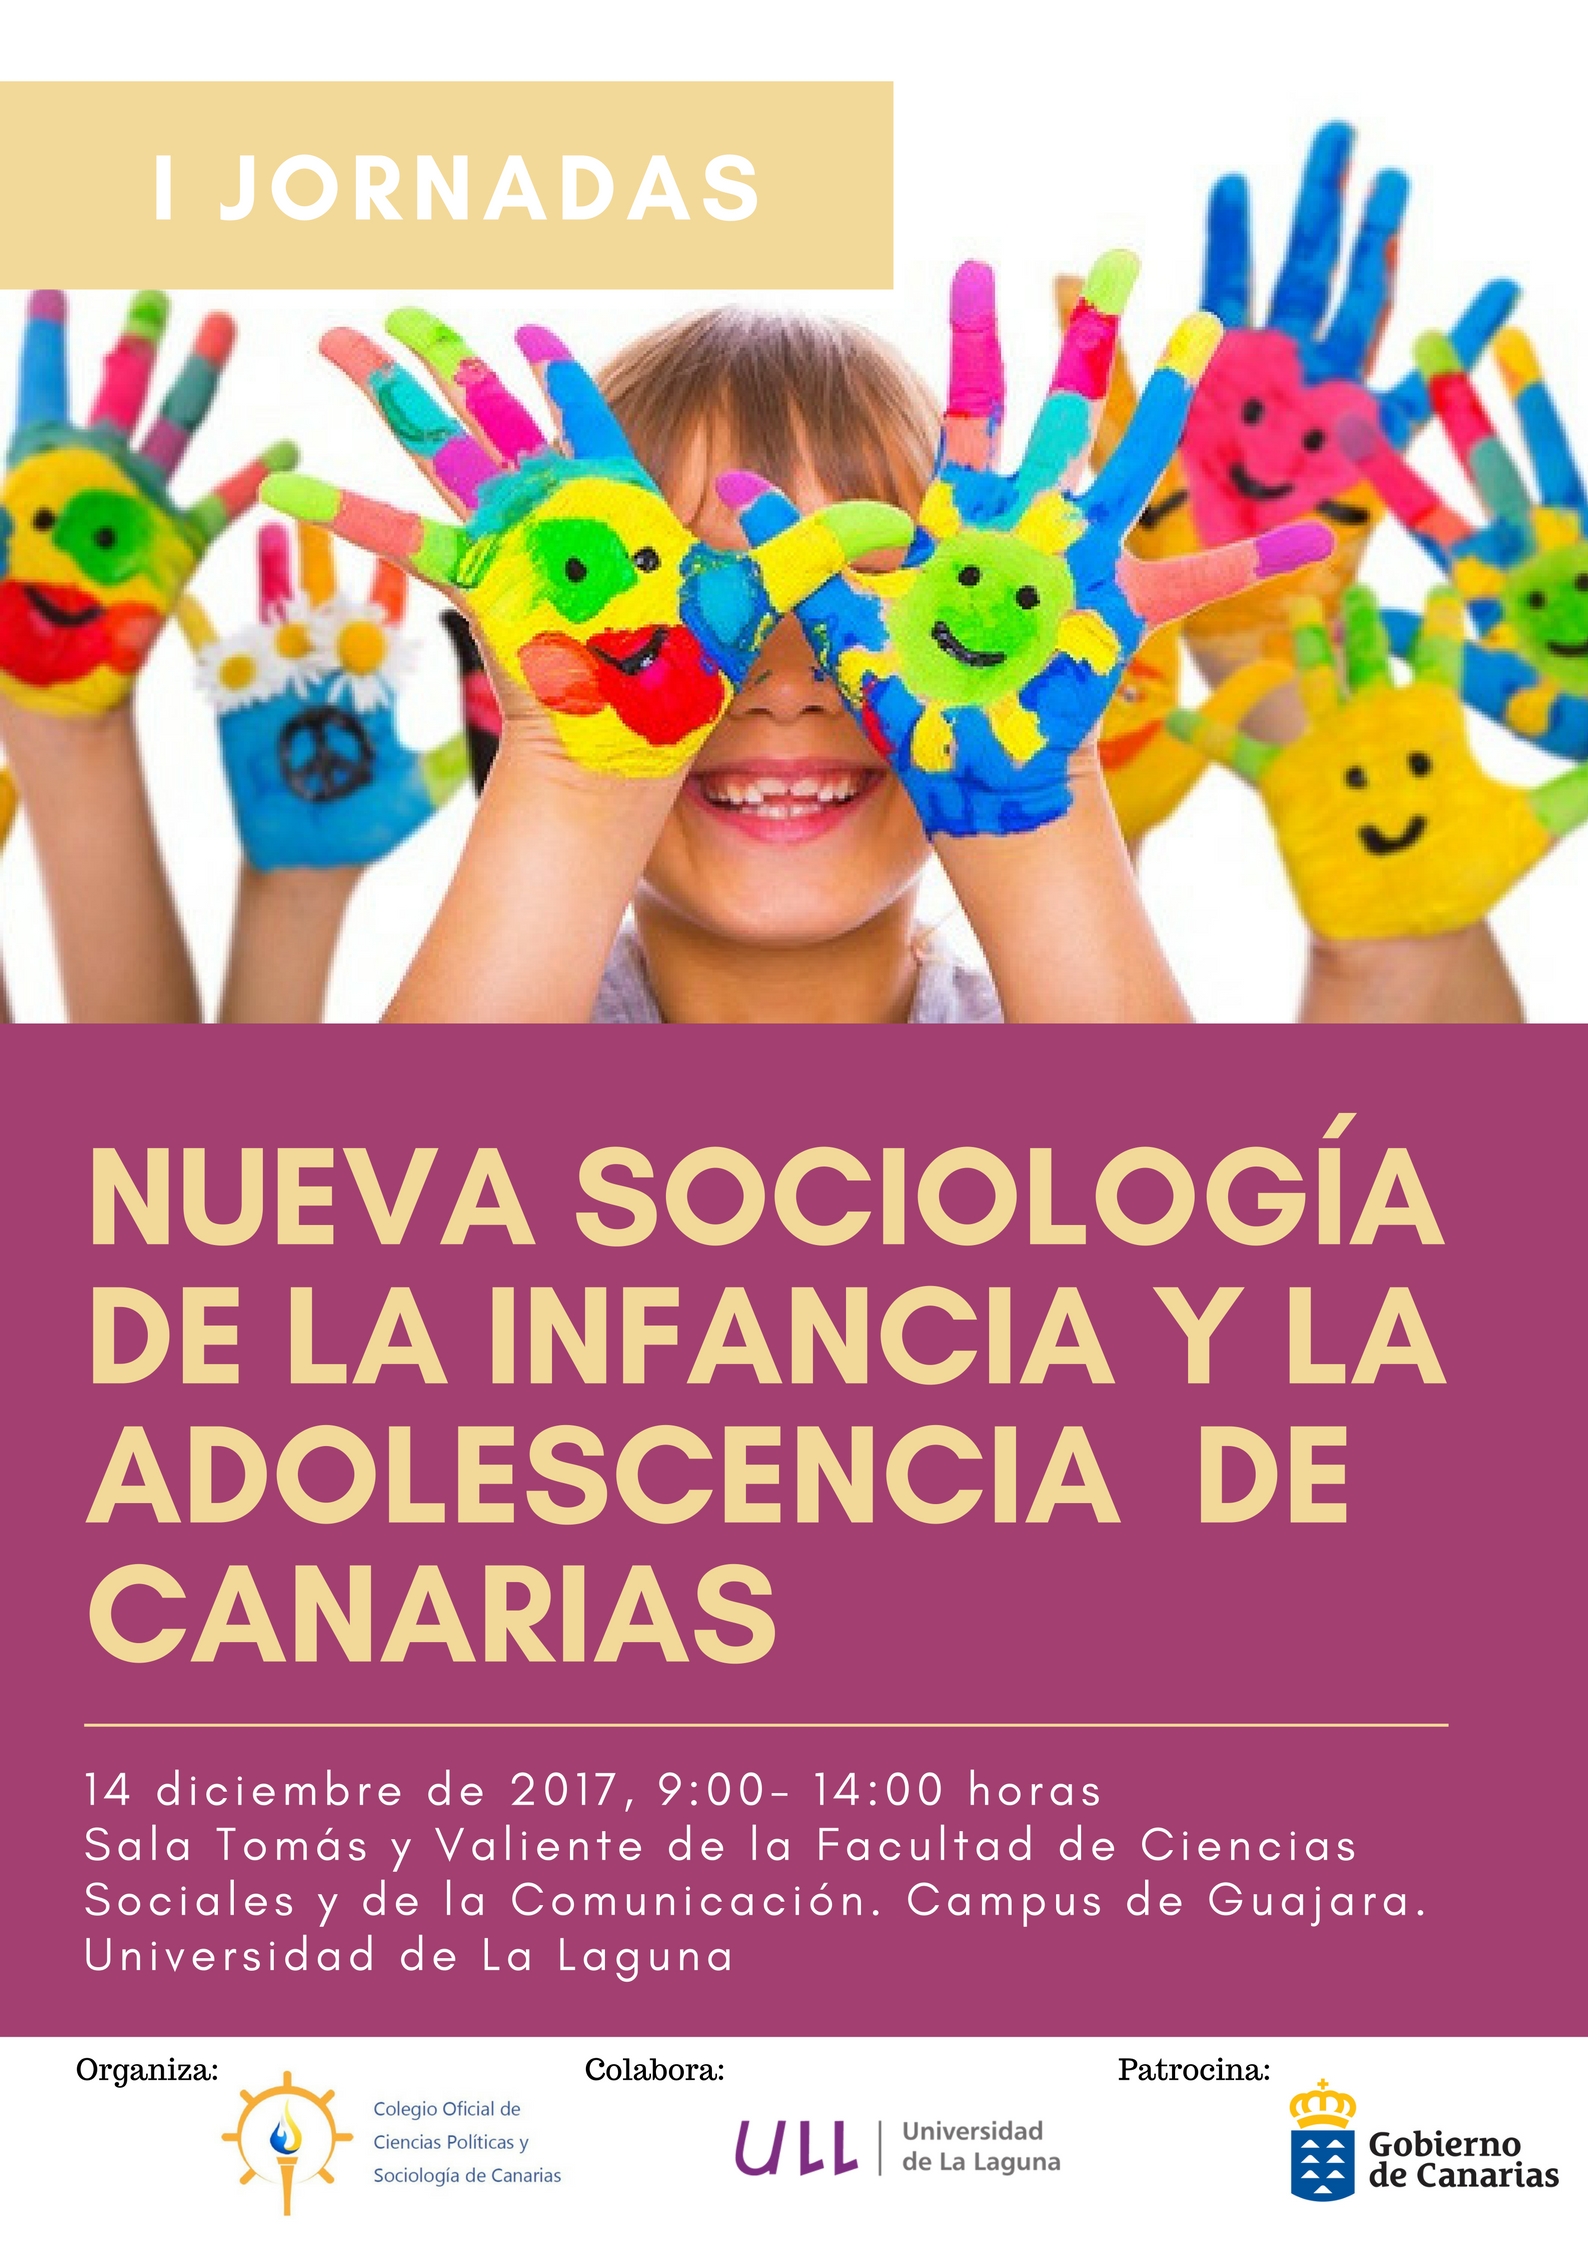 I Jornada de la Nueva Sociología de la Infancia y la Adolescencia en Canarias